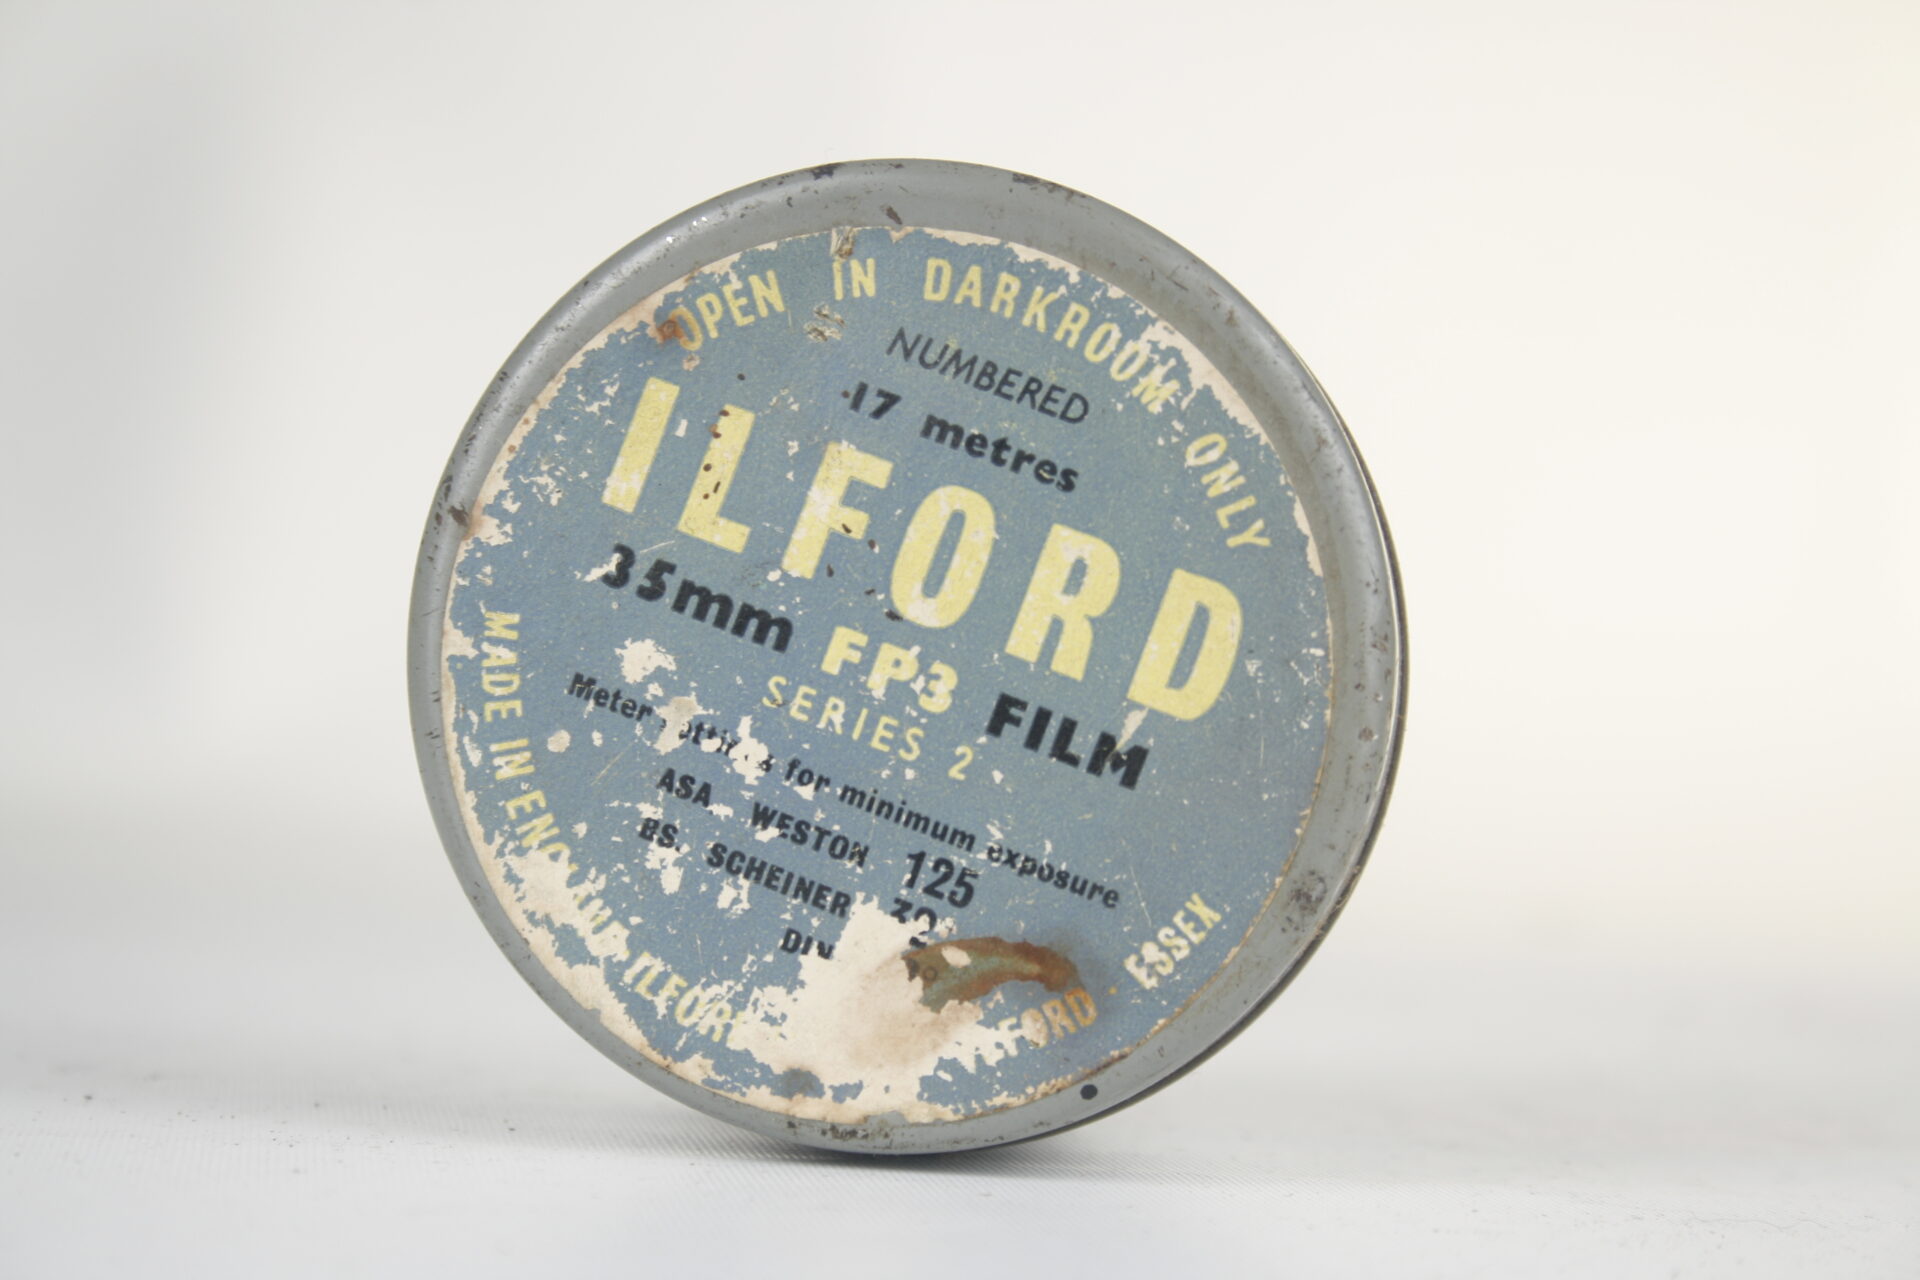 Ilford FP3 film. Series 2. 17 meter 35mm film.